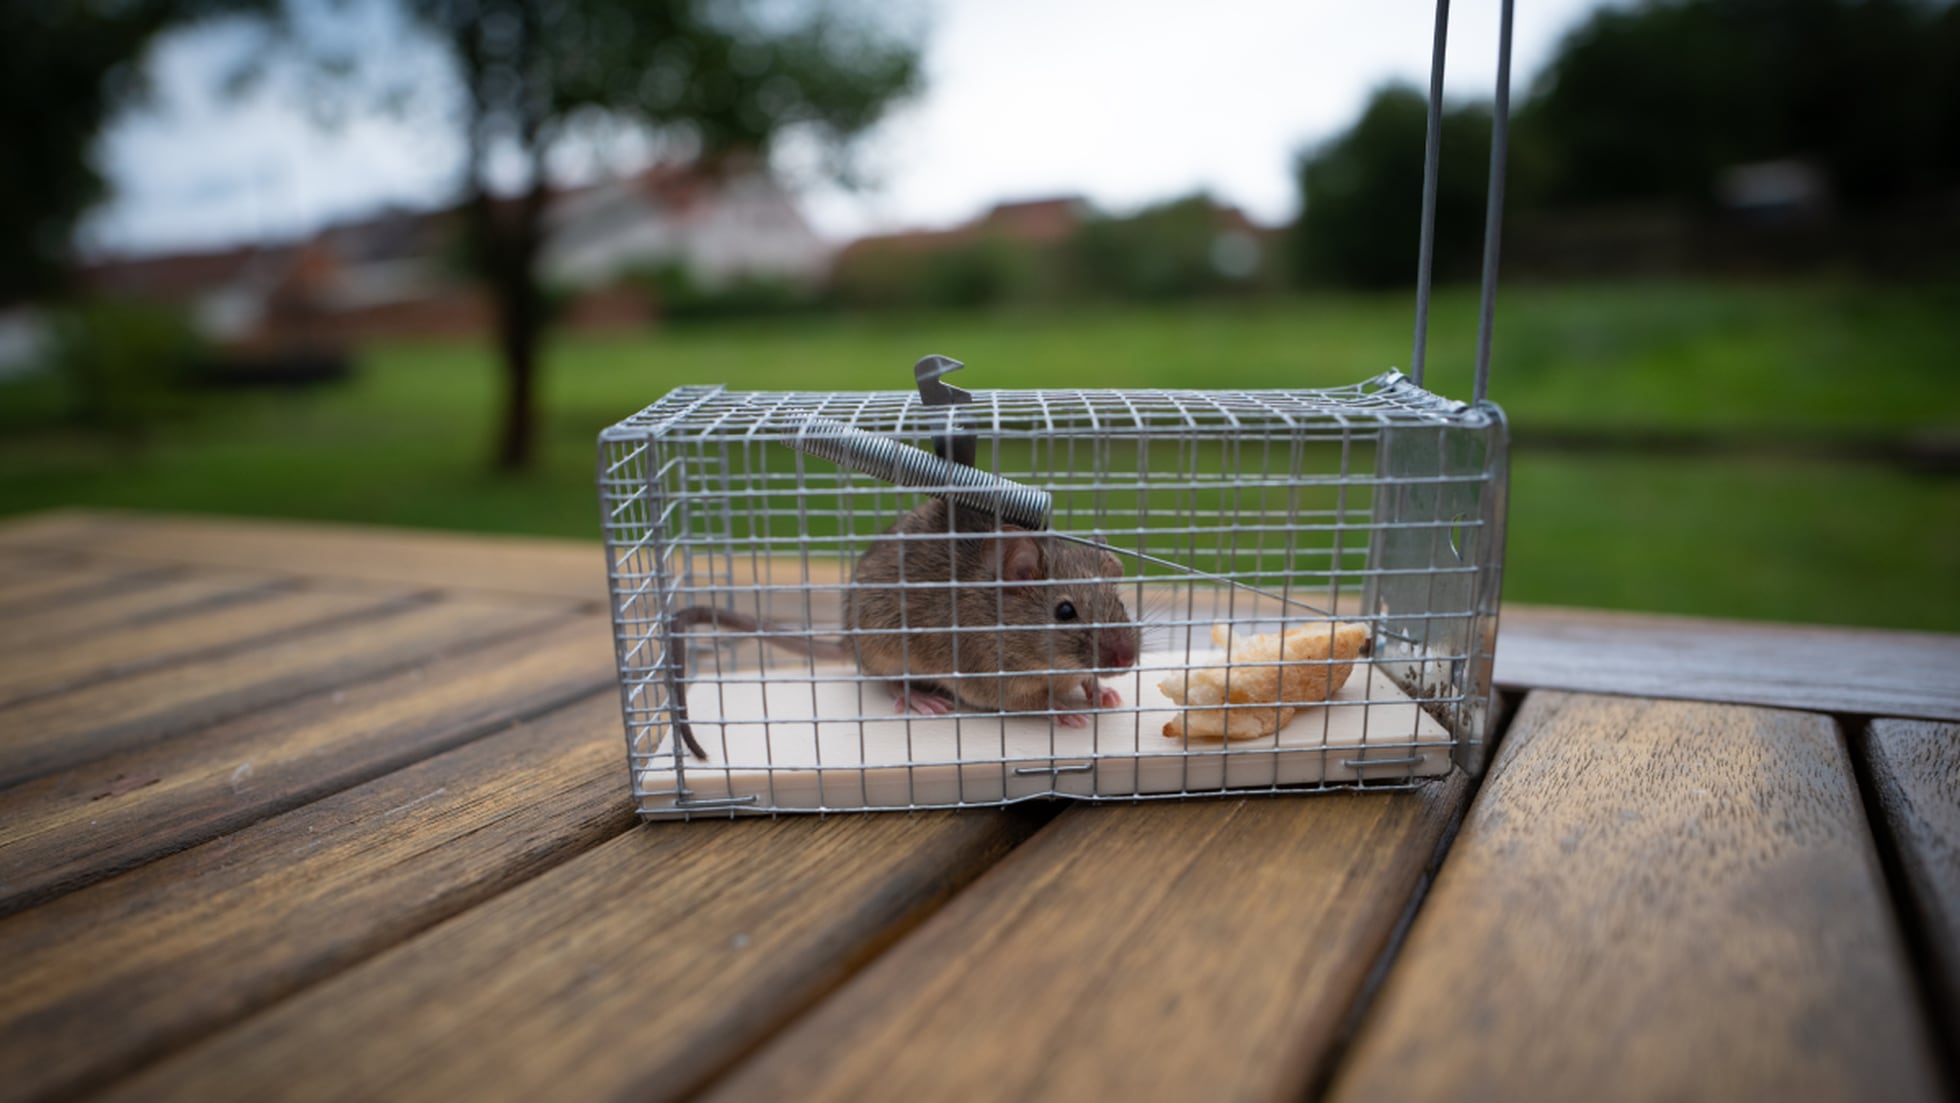 Trampas para ratones sin matarlos - Tiendanimal